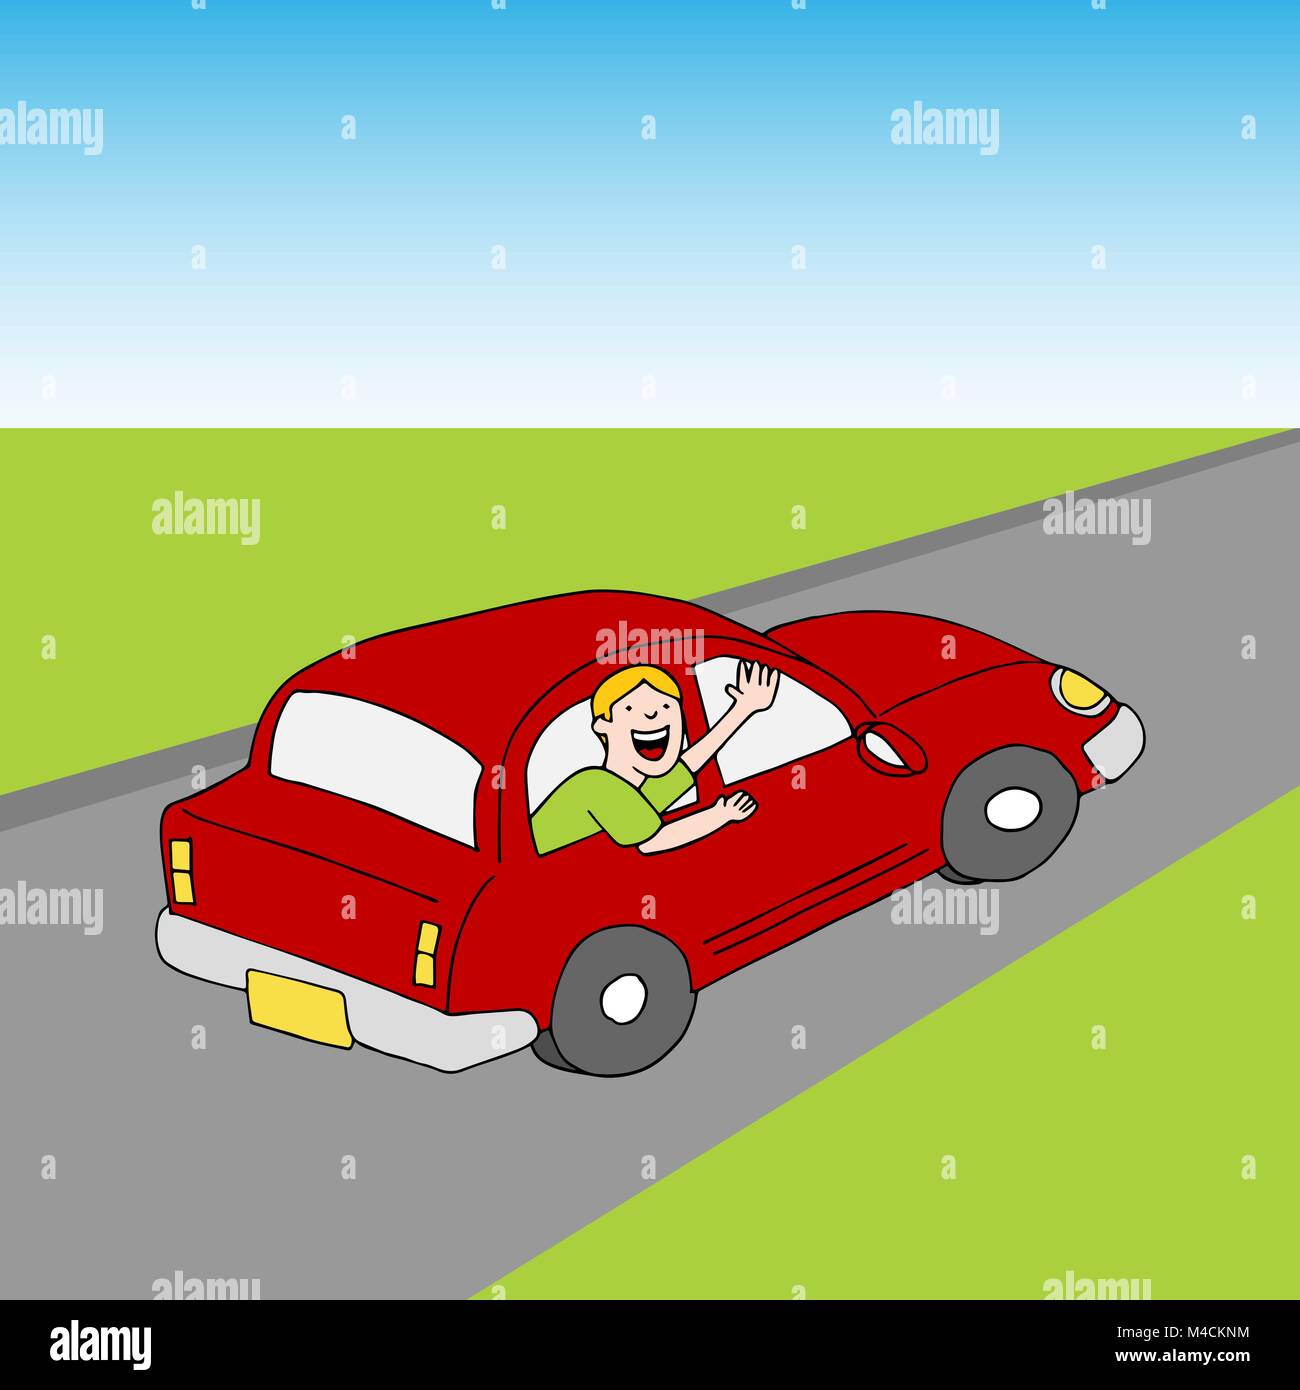 Driving A Car Cartoon Images – Browse 119,556 Stock Photos